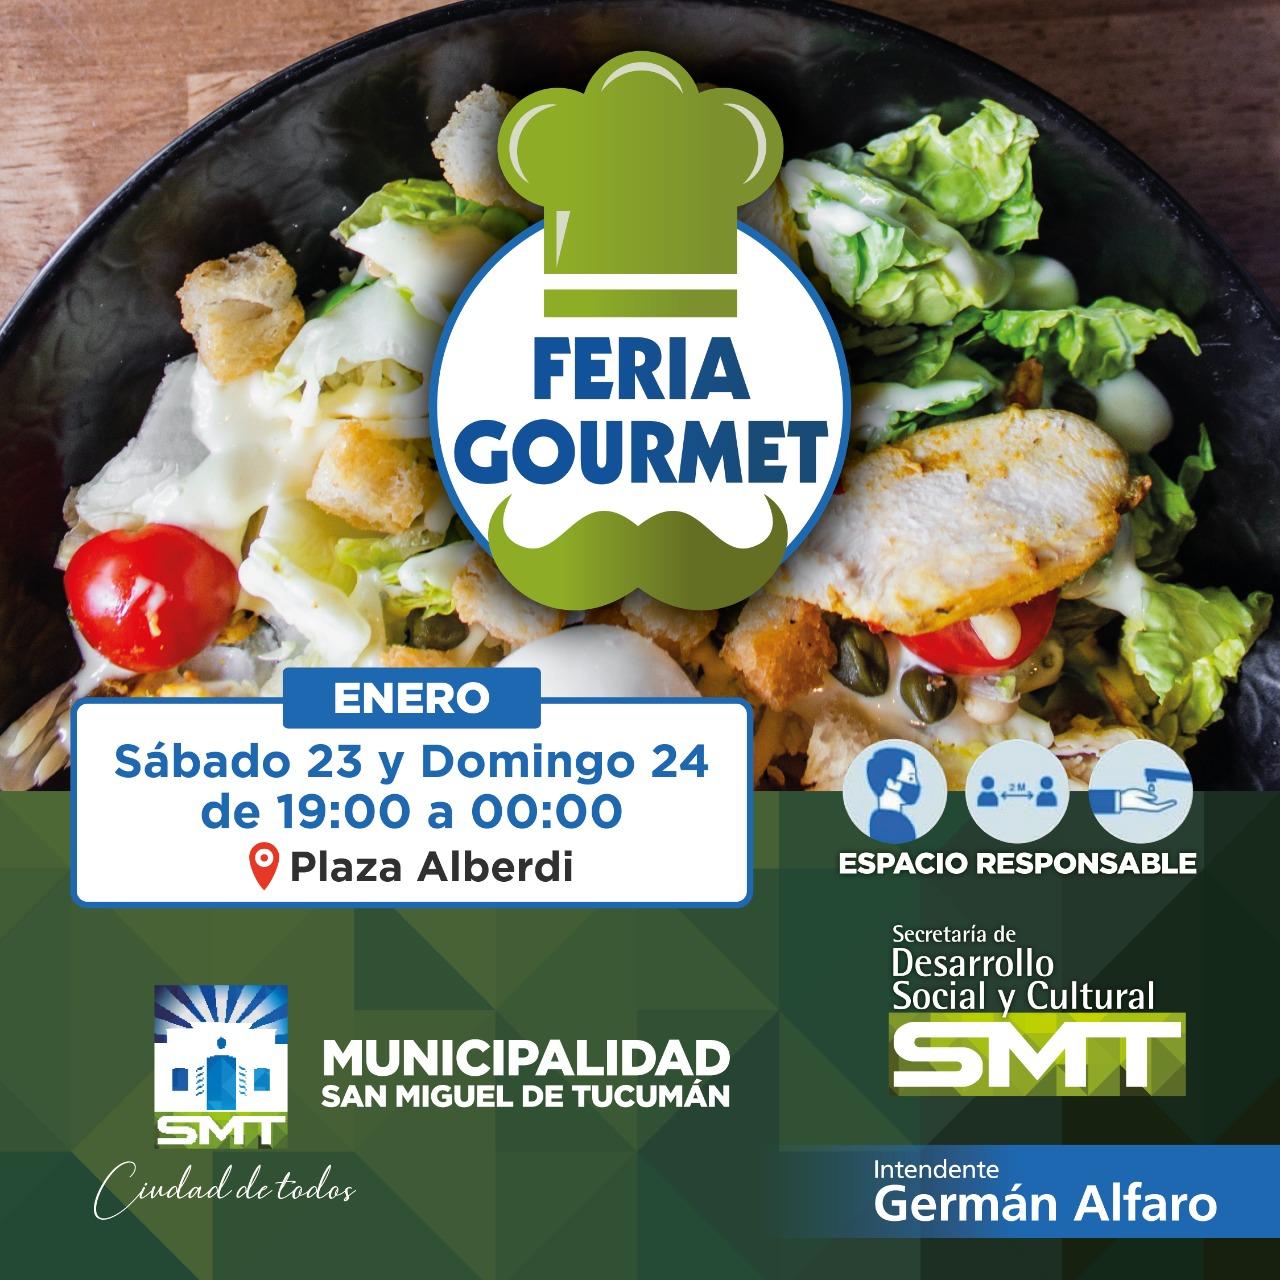 Sabores en la plaza Alberdi: el fin de semana habrá una Feria Gourmet